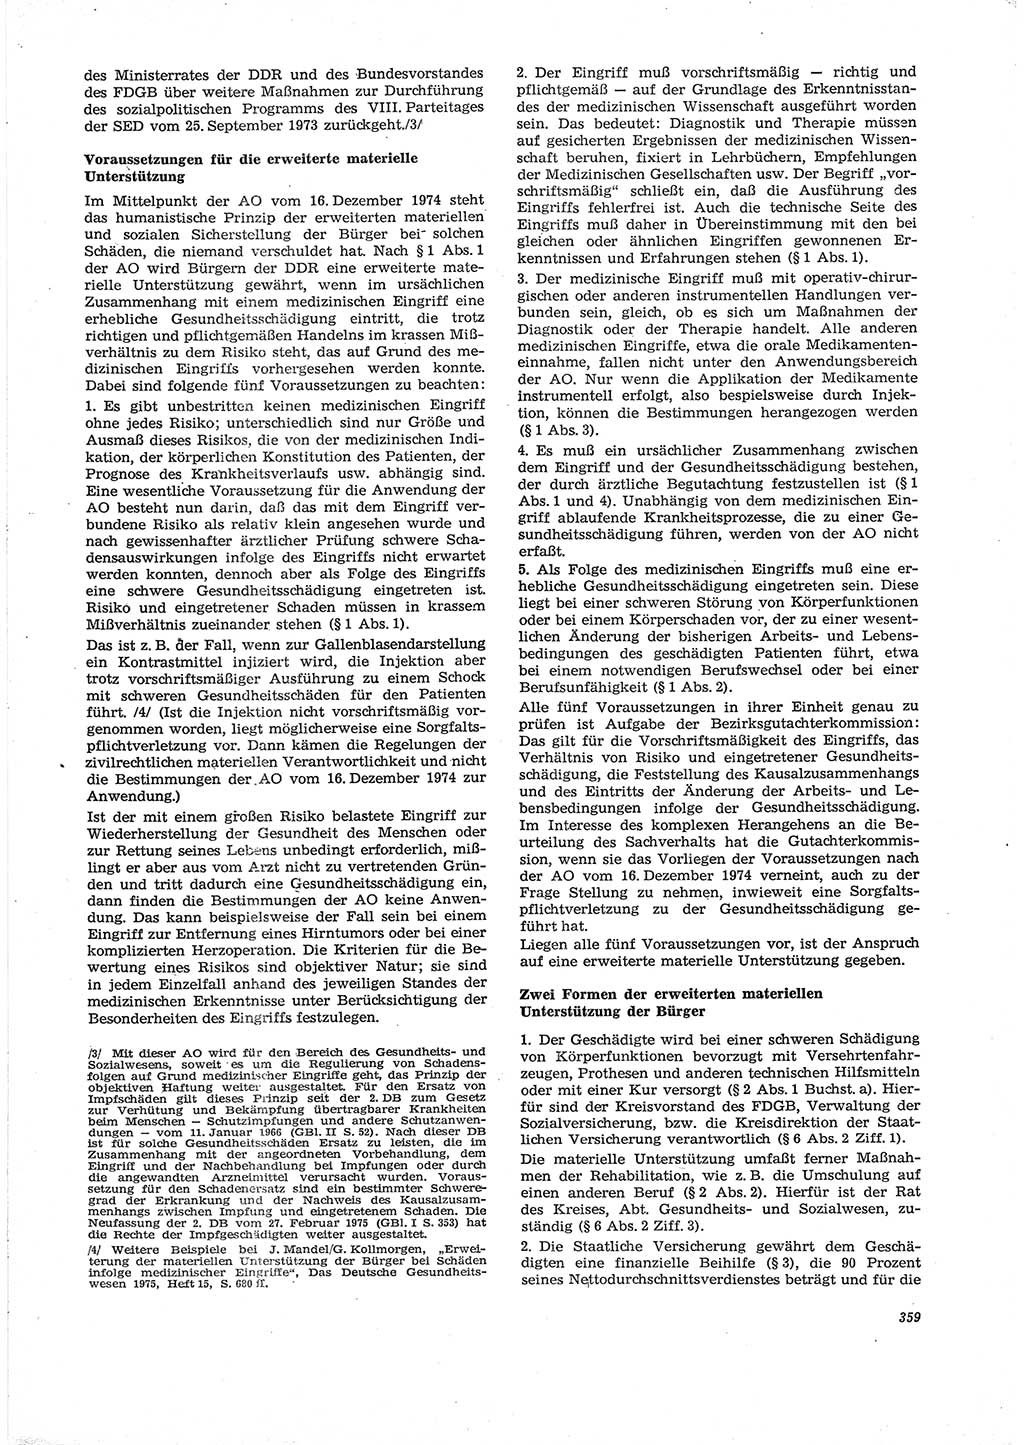 Neue Justiz (NJ), Zeitschrift für Recht und Rechtswissenschaft [Deutsche Demokratische Republik (DDR)], 29. Jahrgang 1975, Seite 359 (NJ DDR 1975, S. 359)